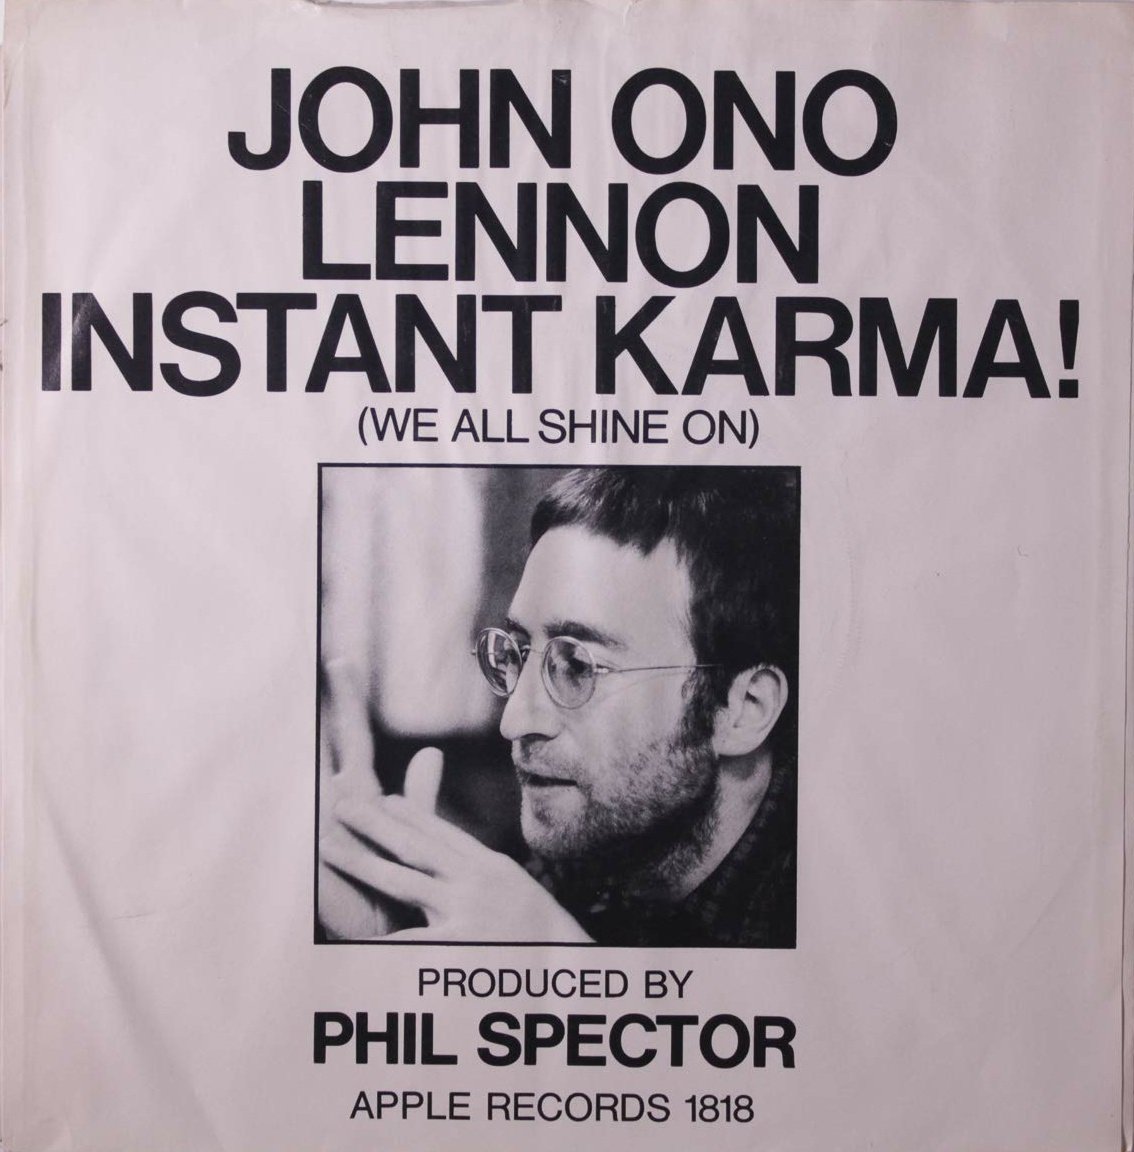 Stephen King tardó menos de cuatro meses en completar un primer borrador de THE SHINING. Para dar con el título se inspiró en la canción de John Lennon 'Instant Karma!' de 1970 que tenía como subtítulo y frase principal del estribillo "We all shine on": 